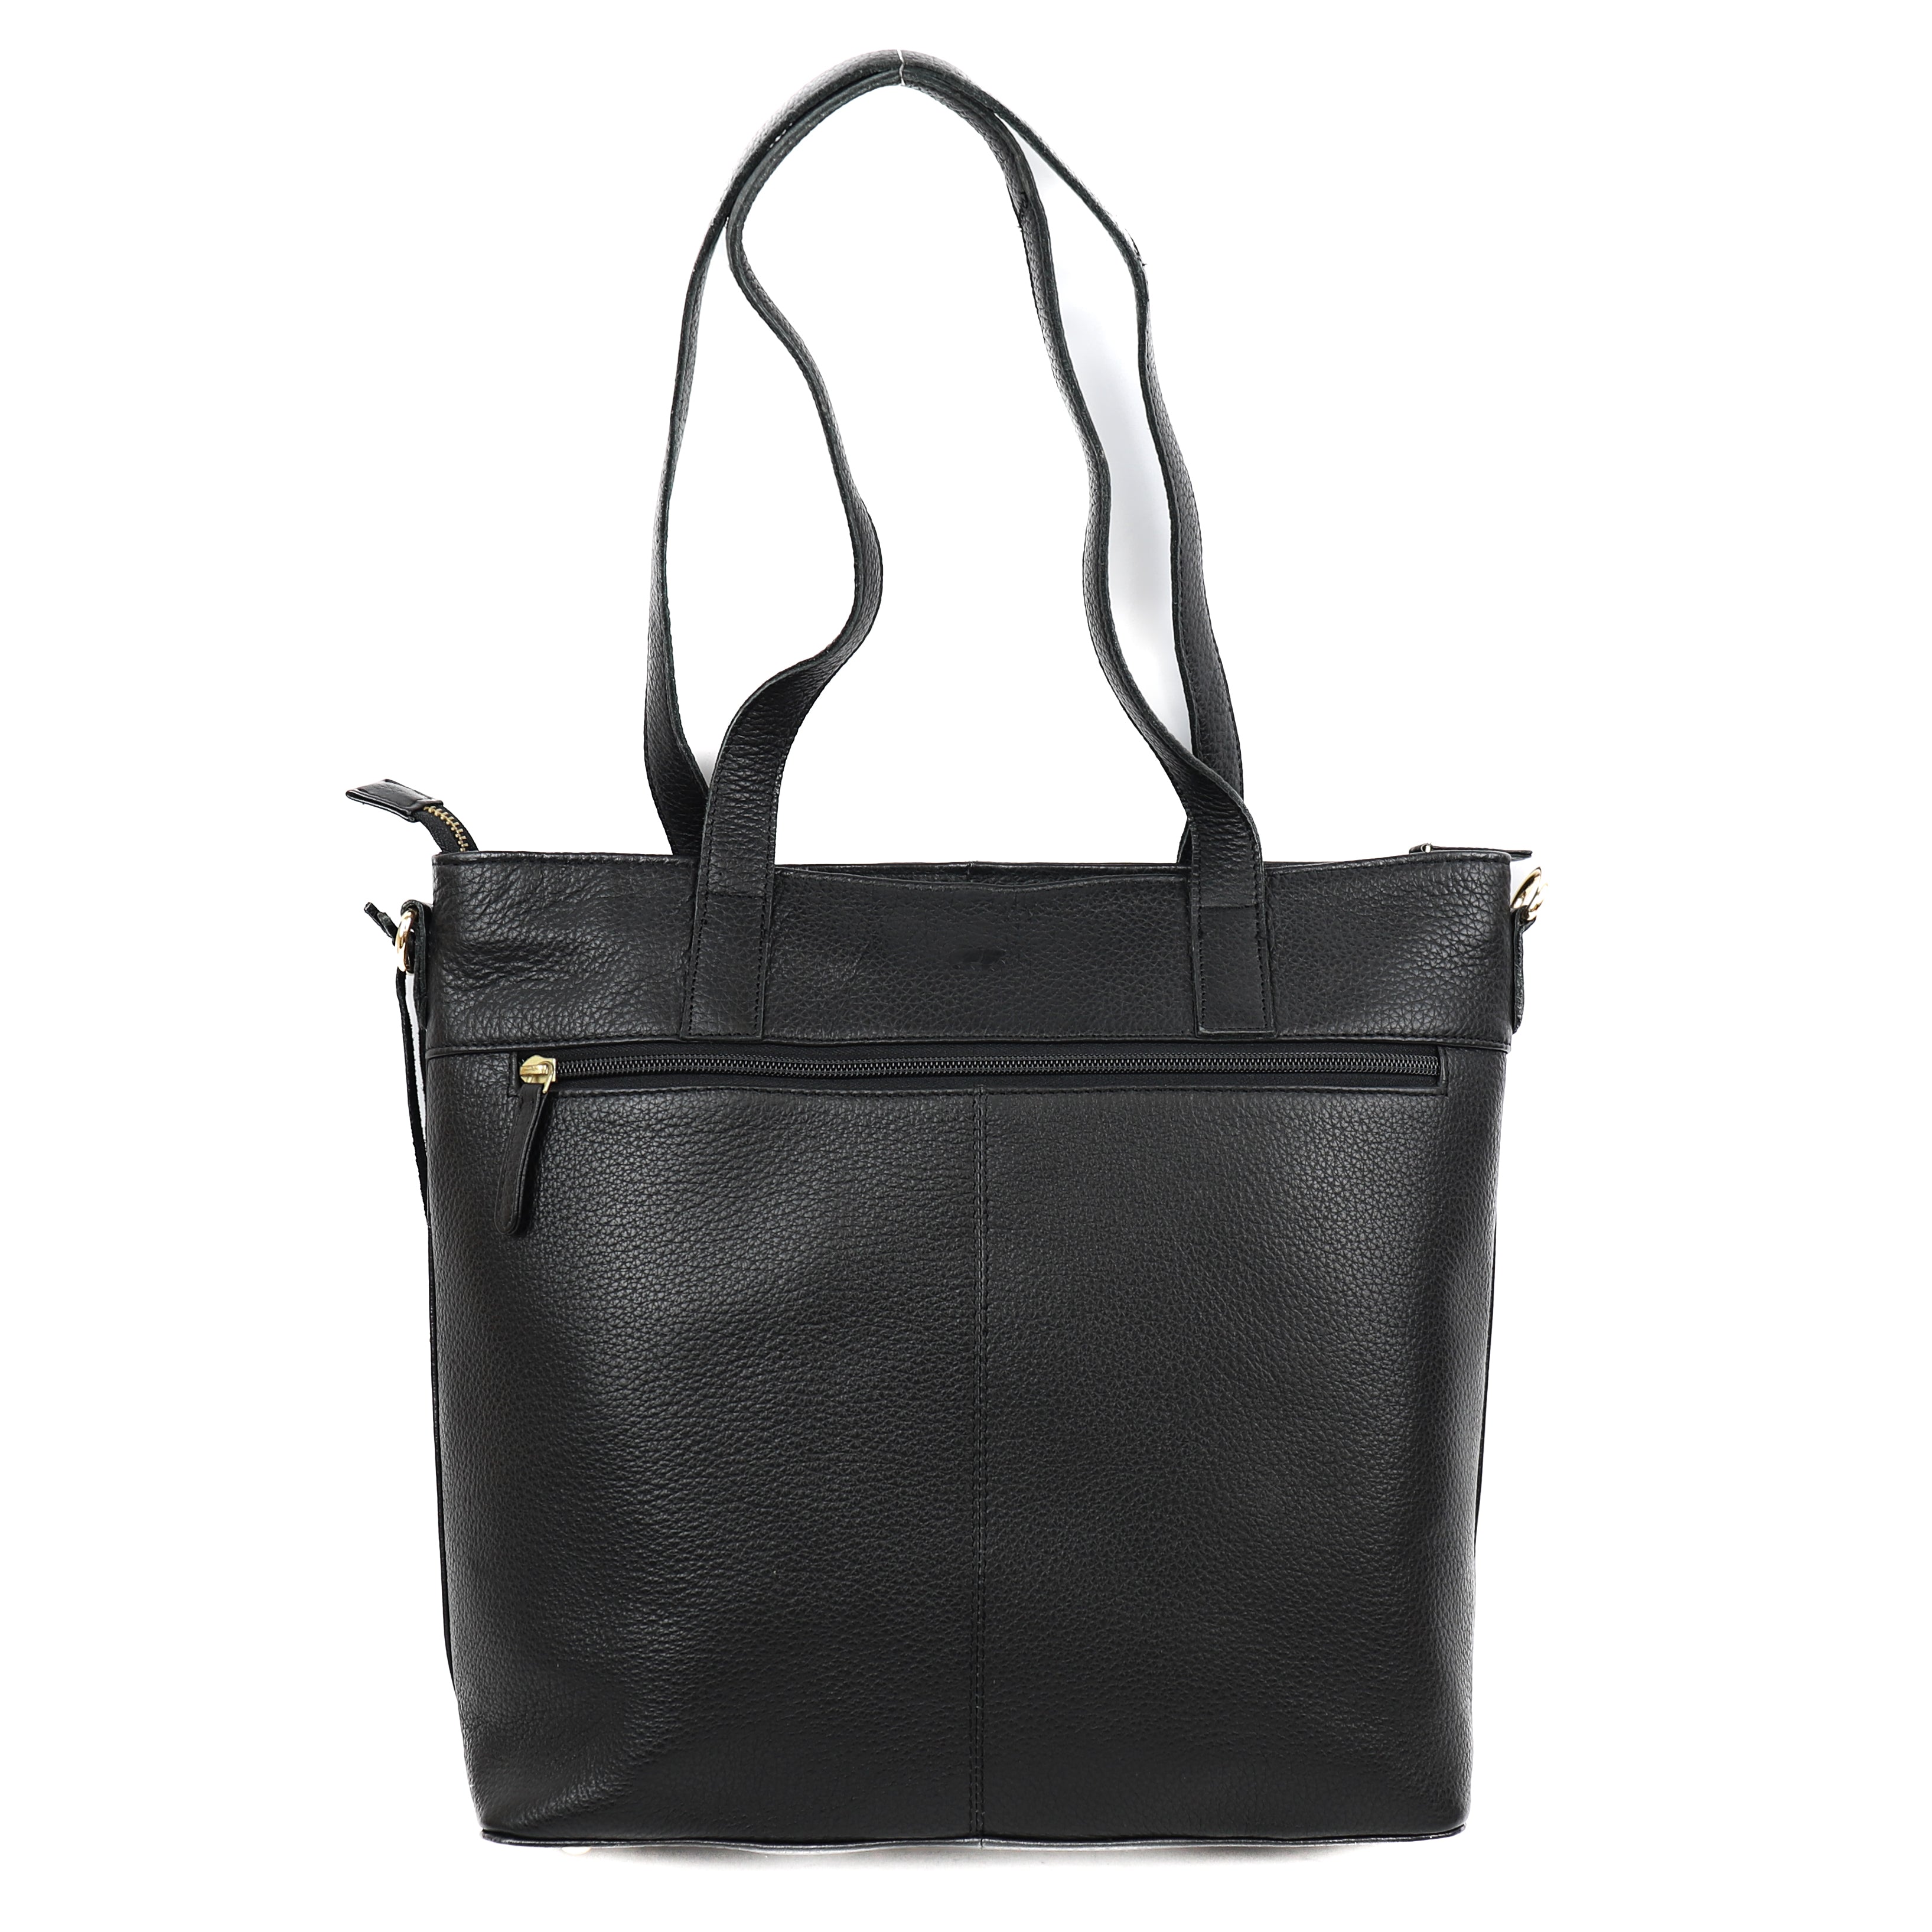 Hand/shoulder bag 'Johanna' black